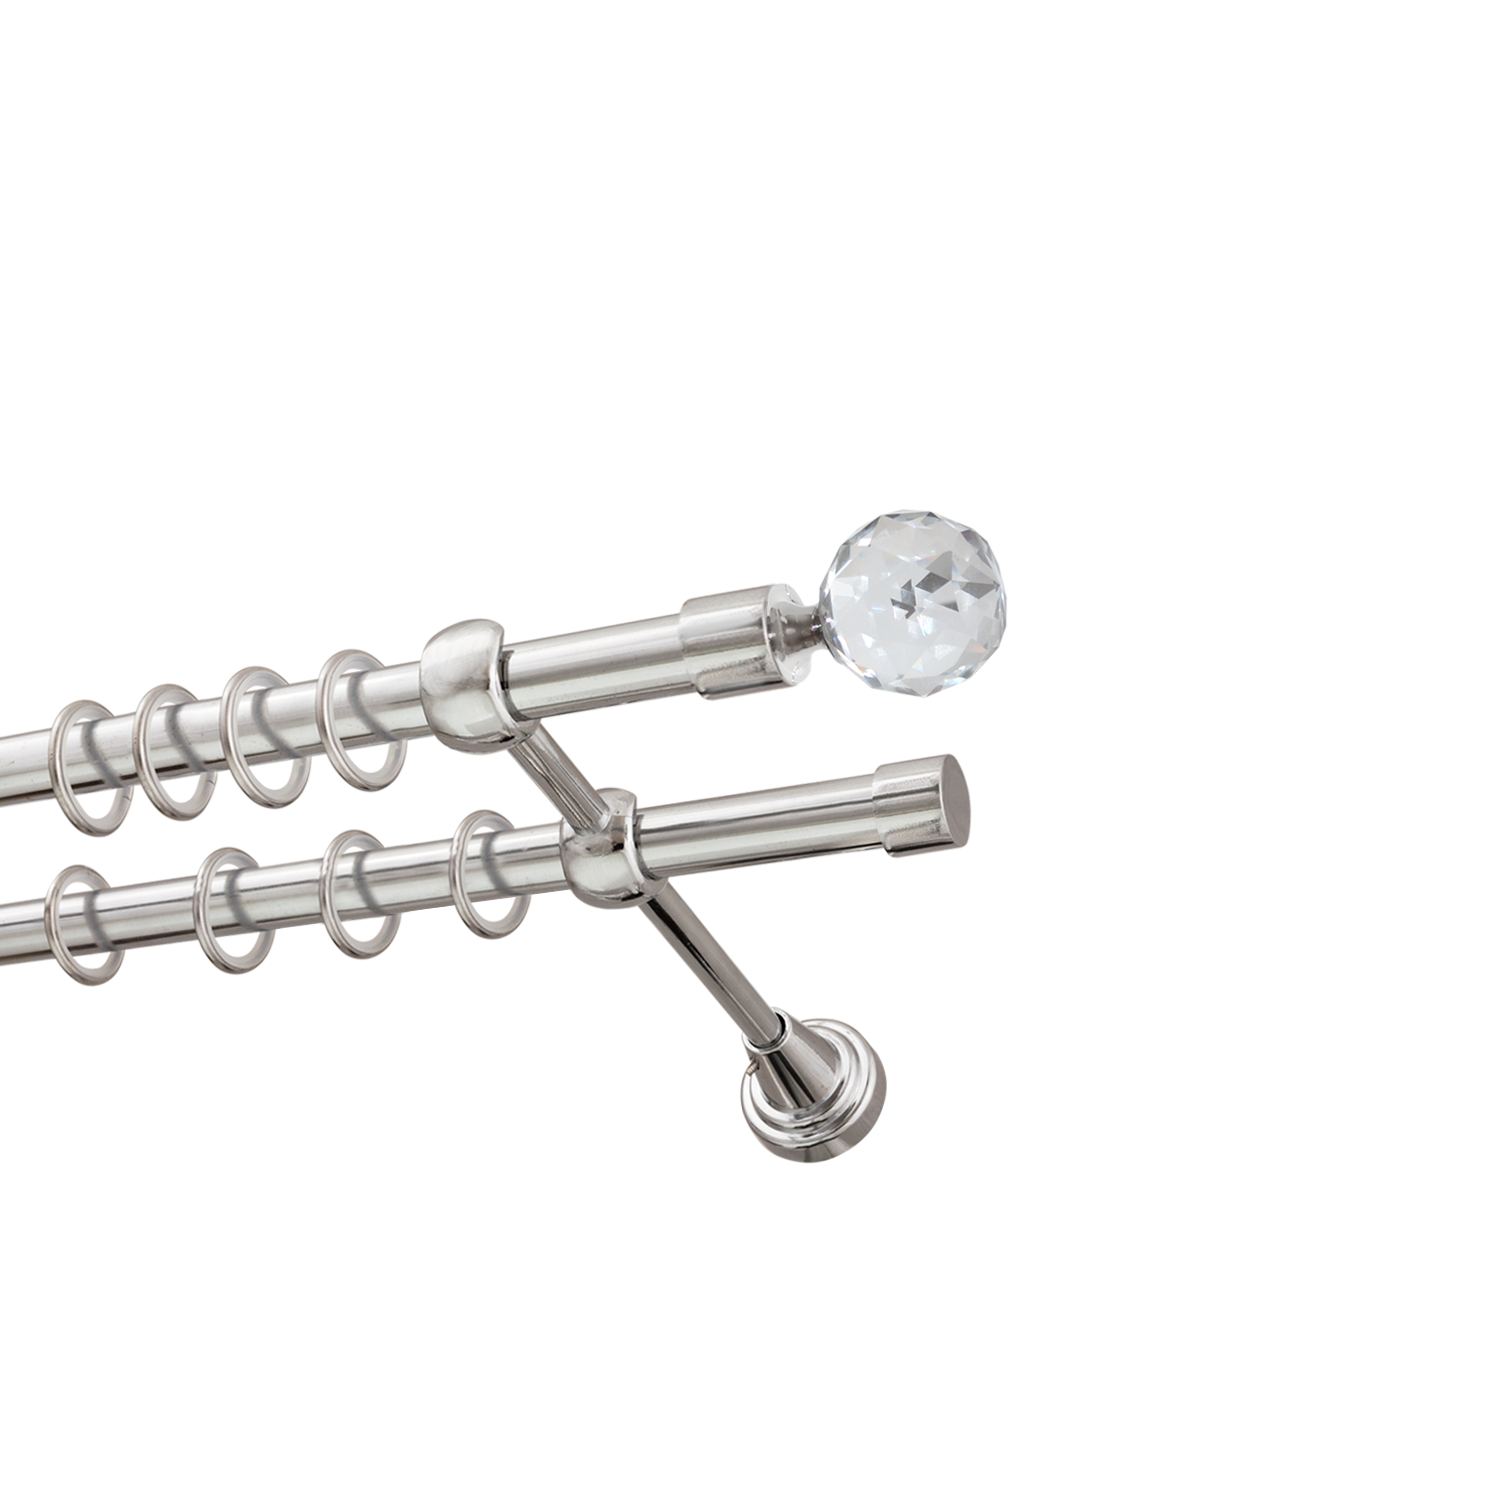 Металлический карниз для штор Карат, двухрядный 16/16 мм, серебро, гладкая штанга, длина 300 см